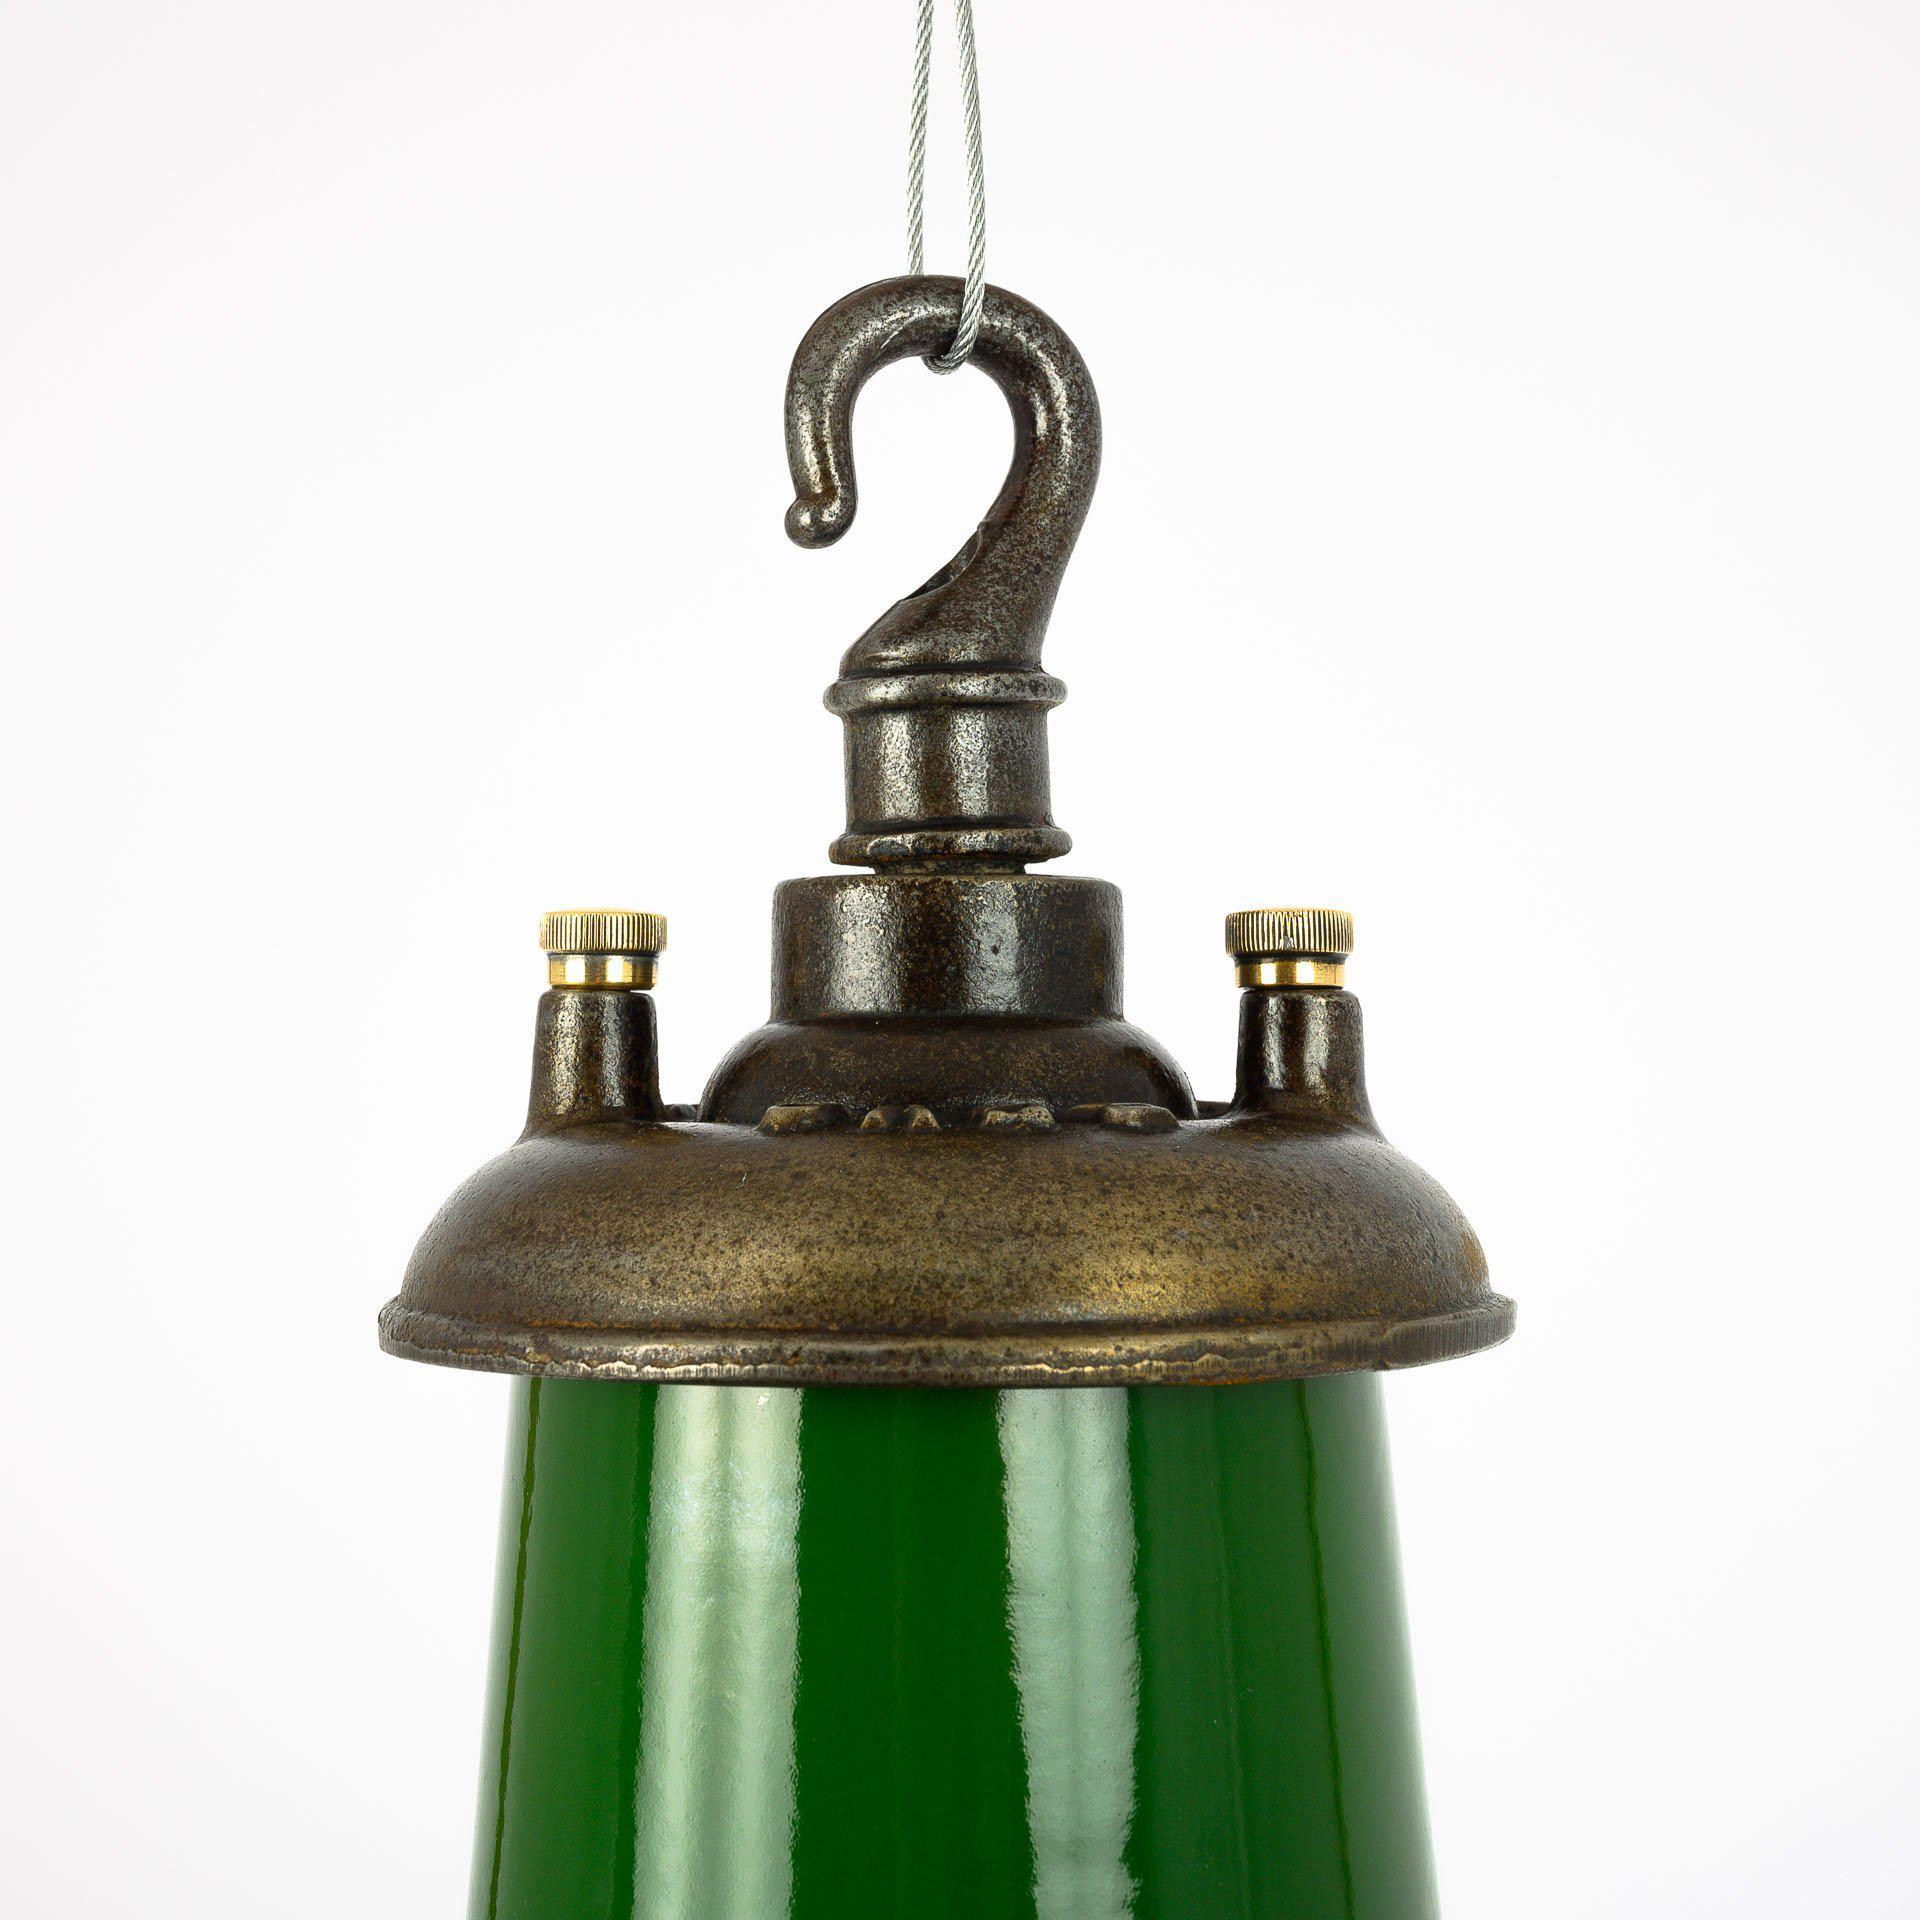 Il s'agit de lampes suspendues industrielles originales en émail vert de Revo Tipton.
Superbe série de 26 lampes industrielles fabriquées par Revo à Tipton, en Angleterre, vers 1940.

Ces lampes ont été récupérées dans une usine d'outillage située